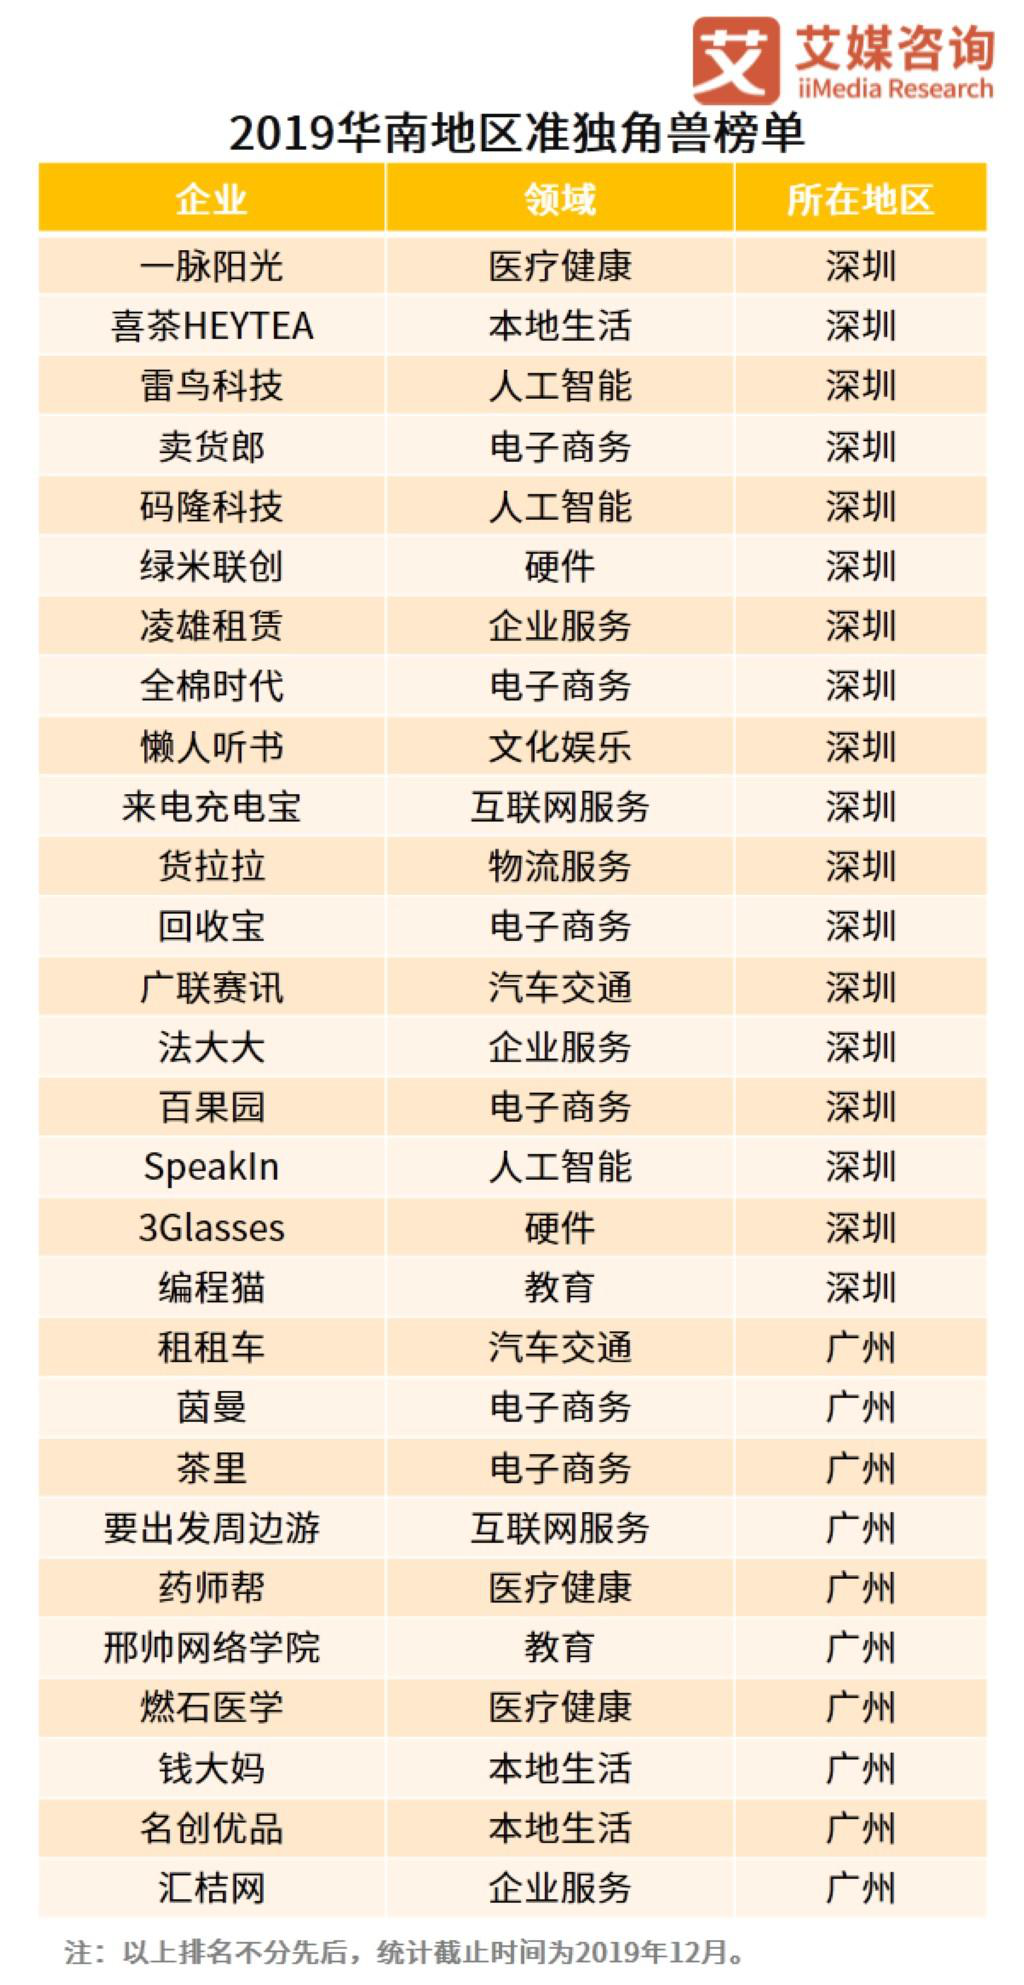  准独角兽雷鸟科技入选《2019中国华南新经济行业准独角兽榜单》